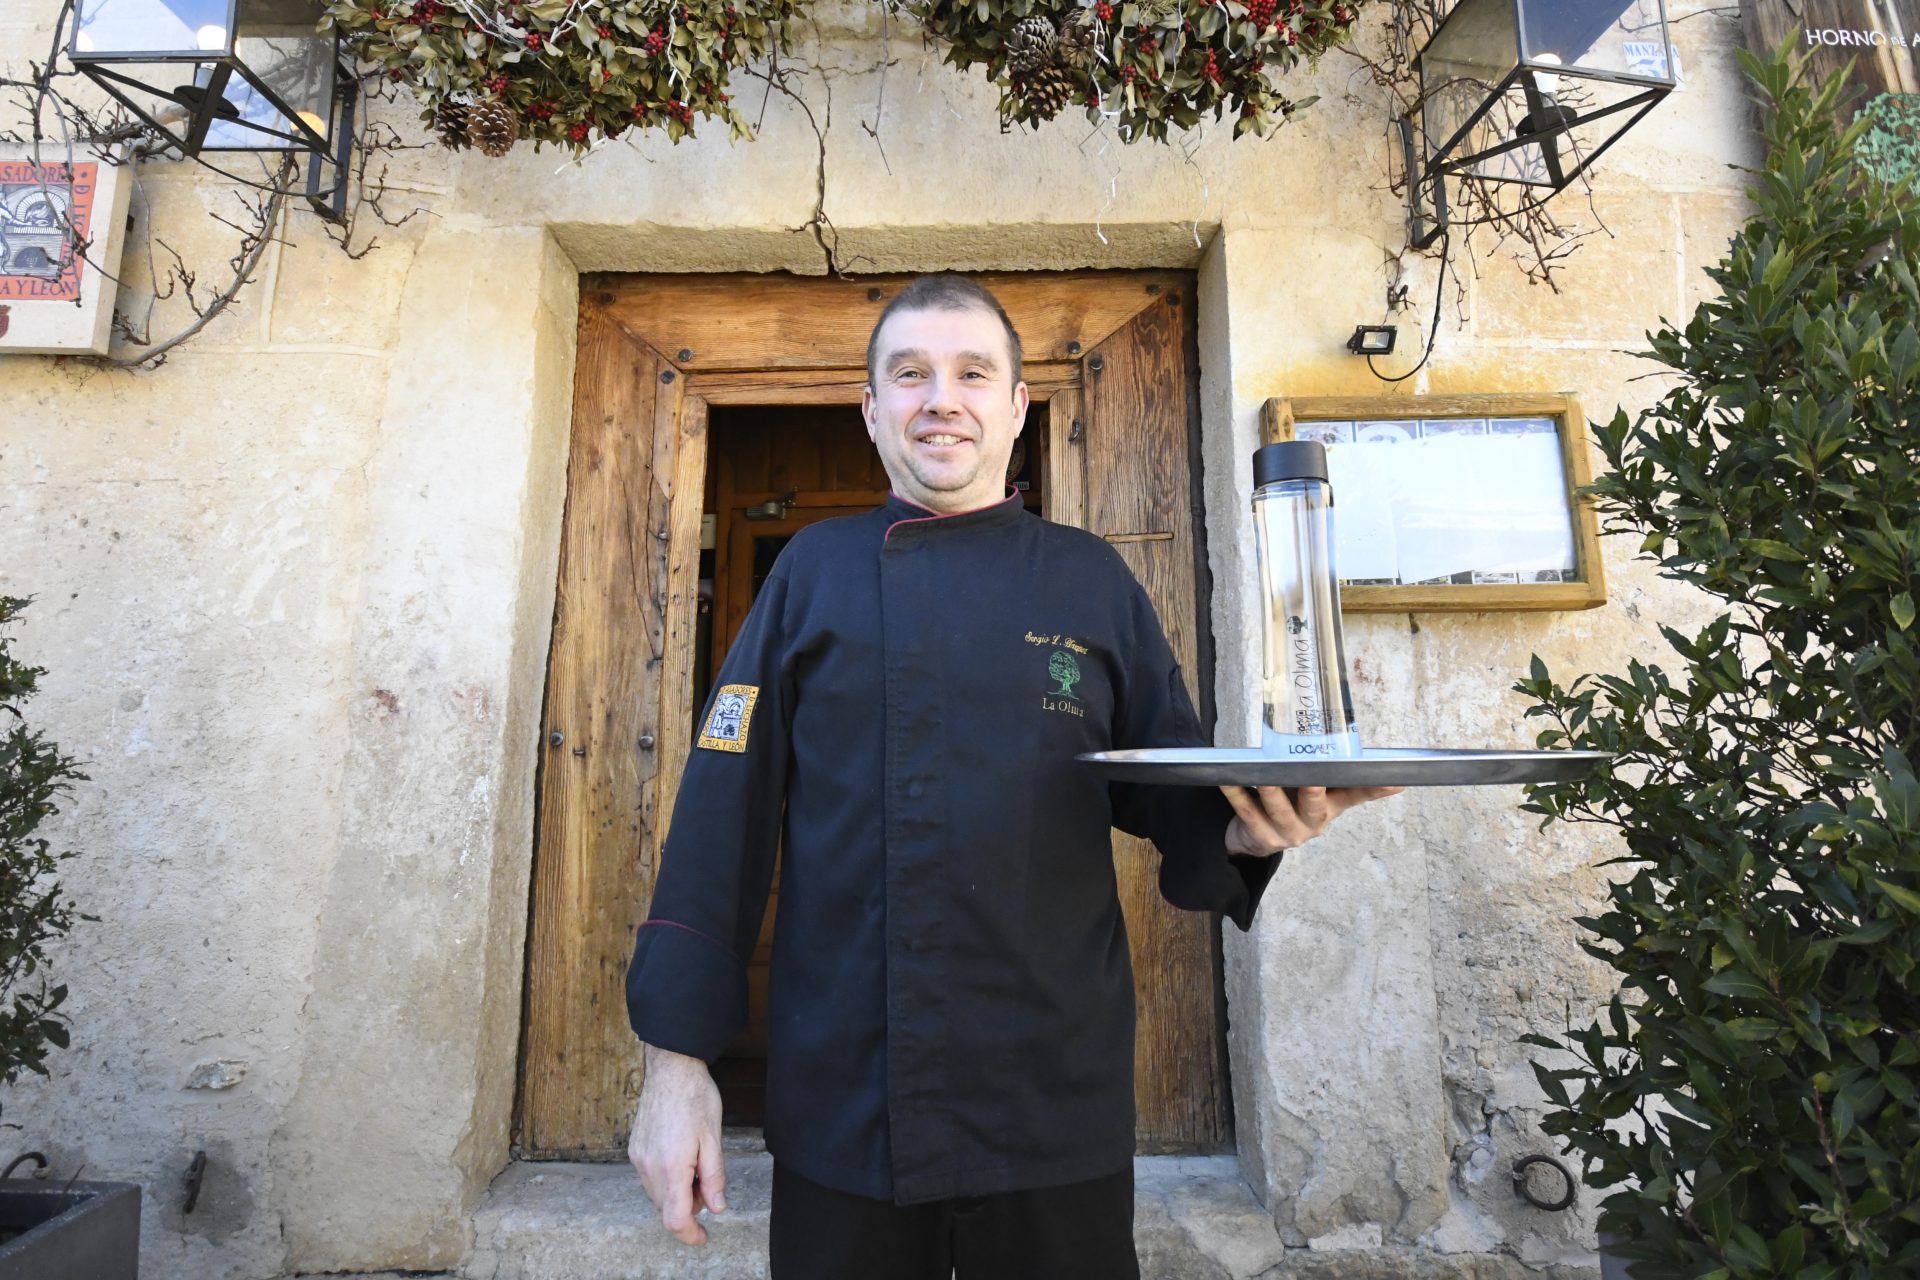 El dueño del restaurante La Olma de Pedraza, que ofrece agua del grifo gratis pero cobra 4,5 euros por servirla.